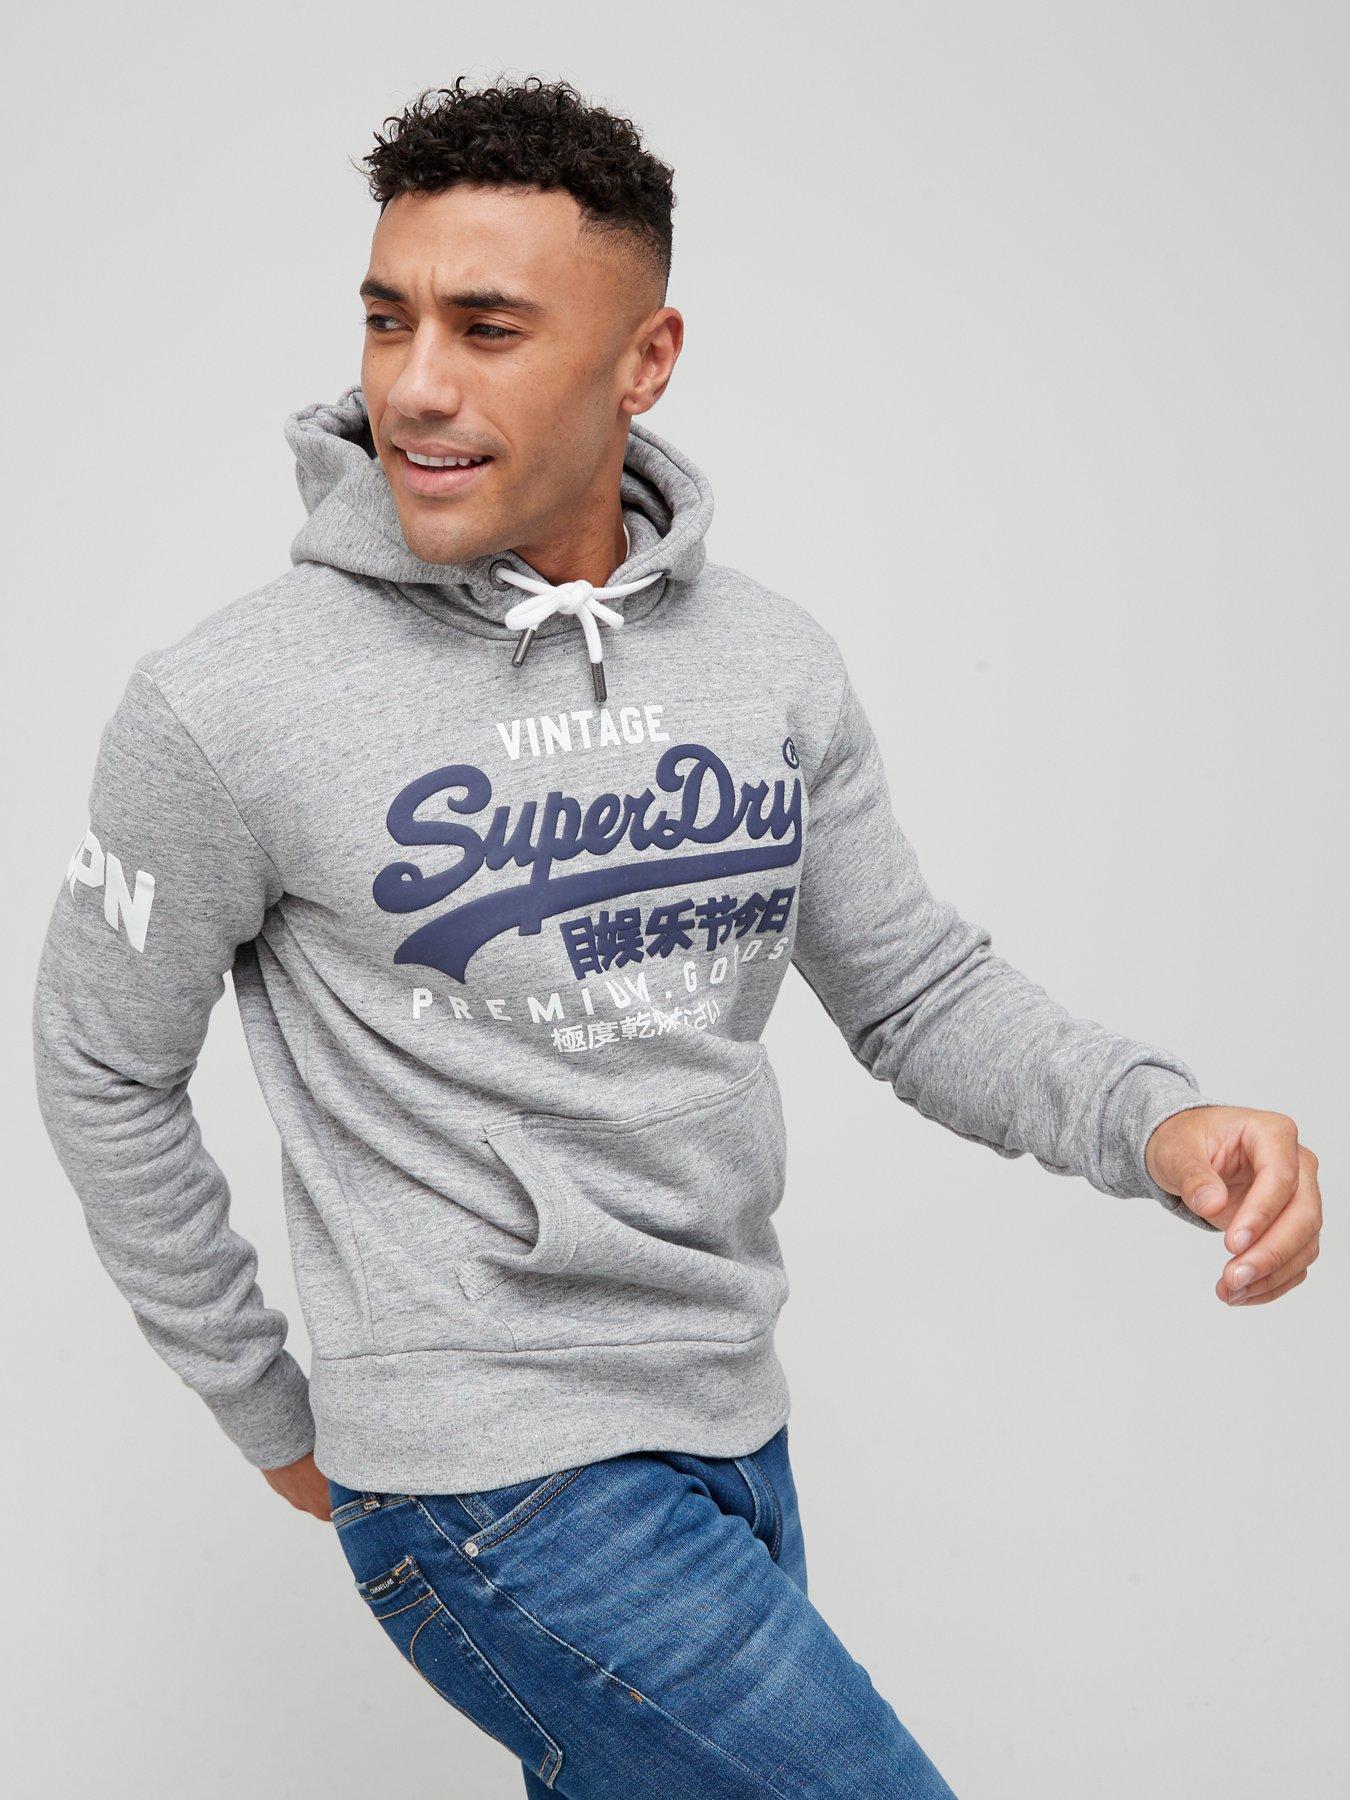 Men's Superdry Hoodies, Sweatshirts For Men